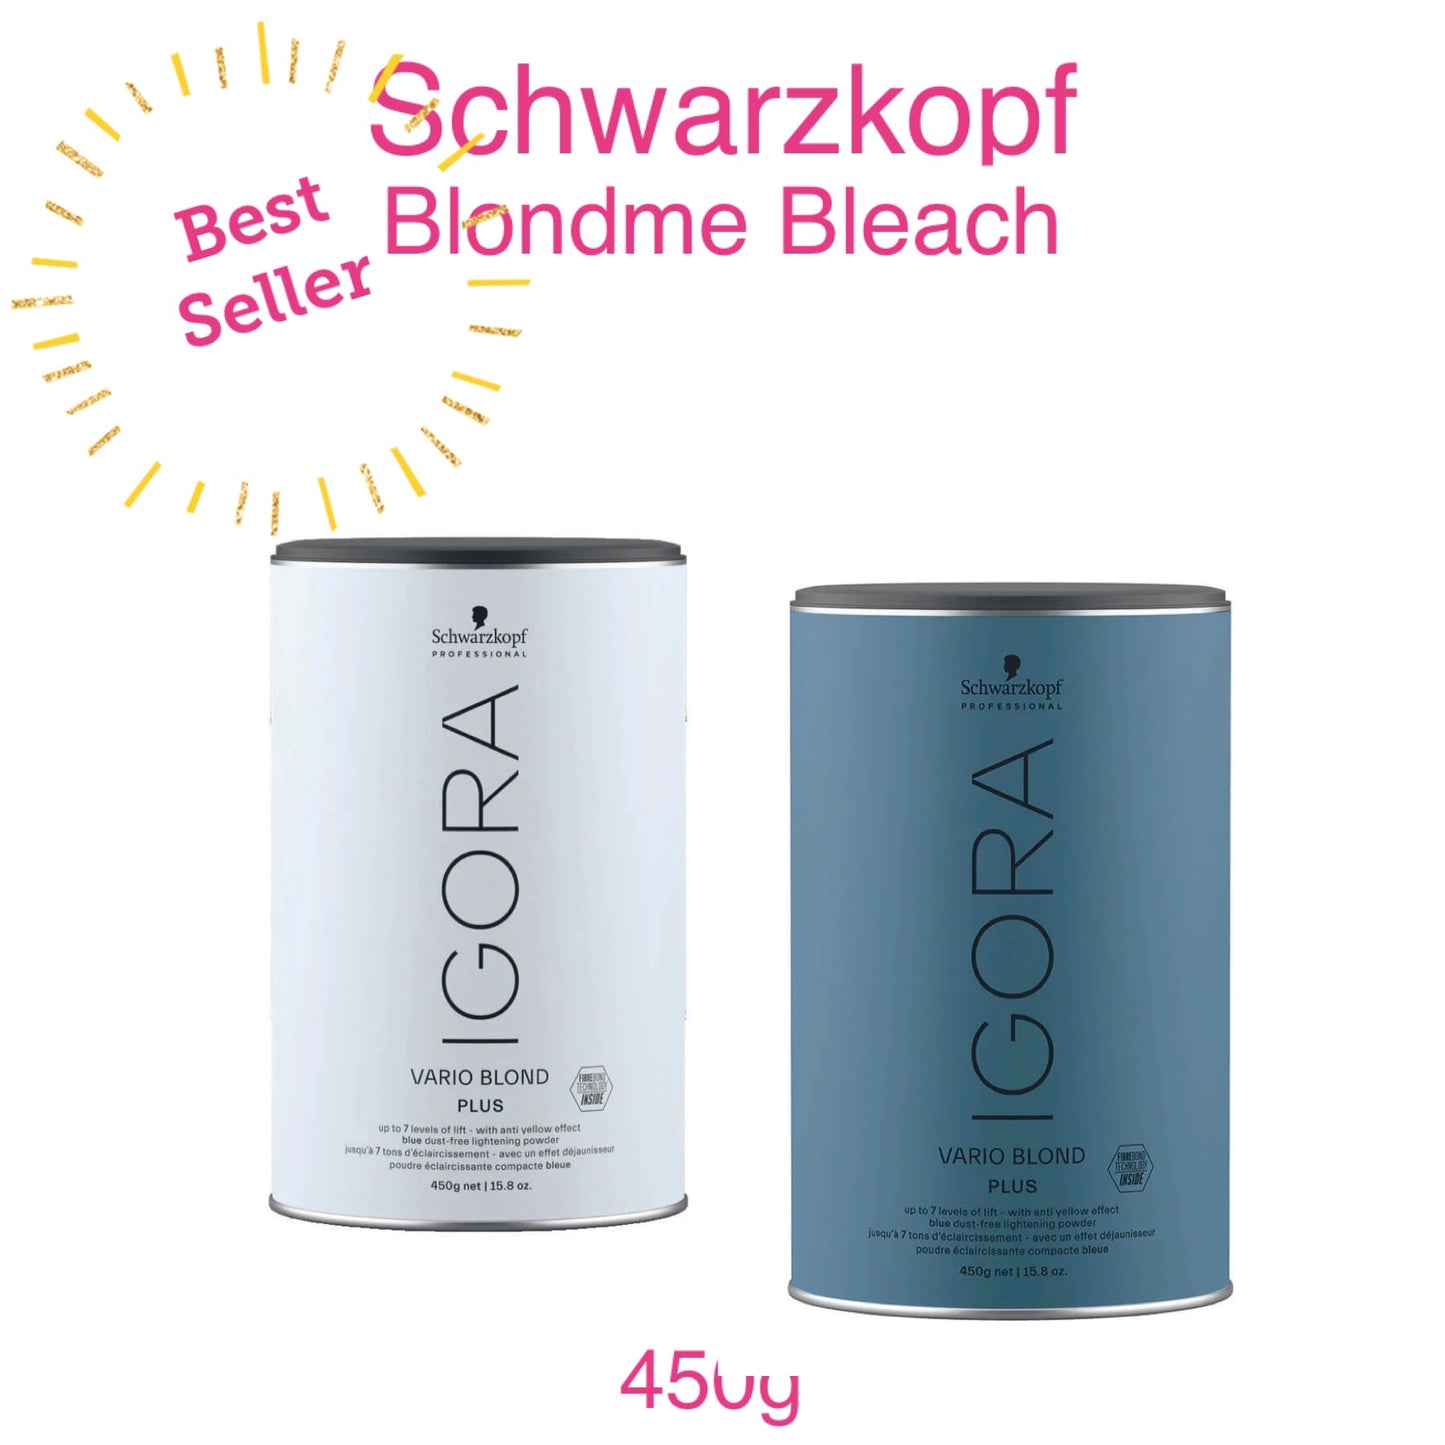 Schwarzkopf Igora Bleach Powder 450g